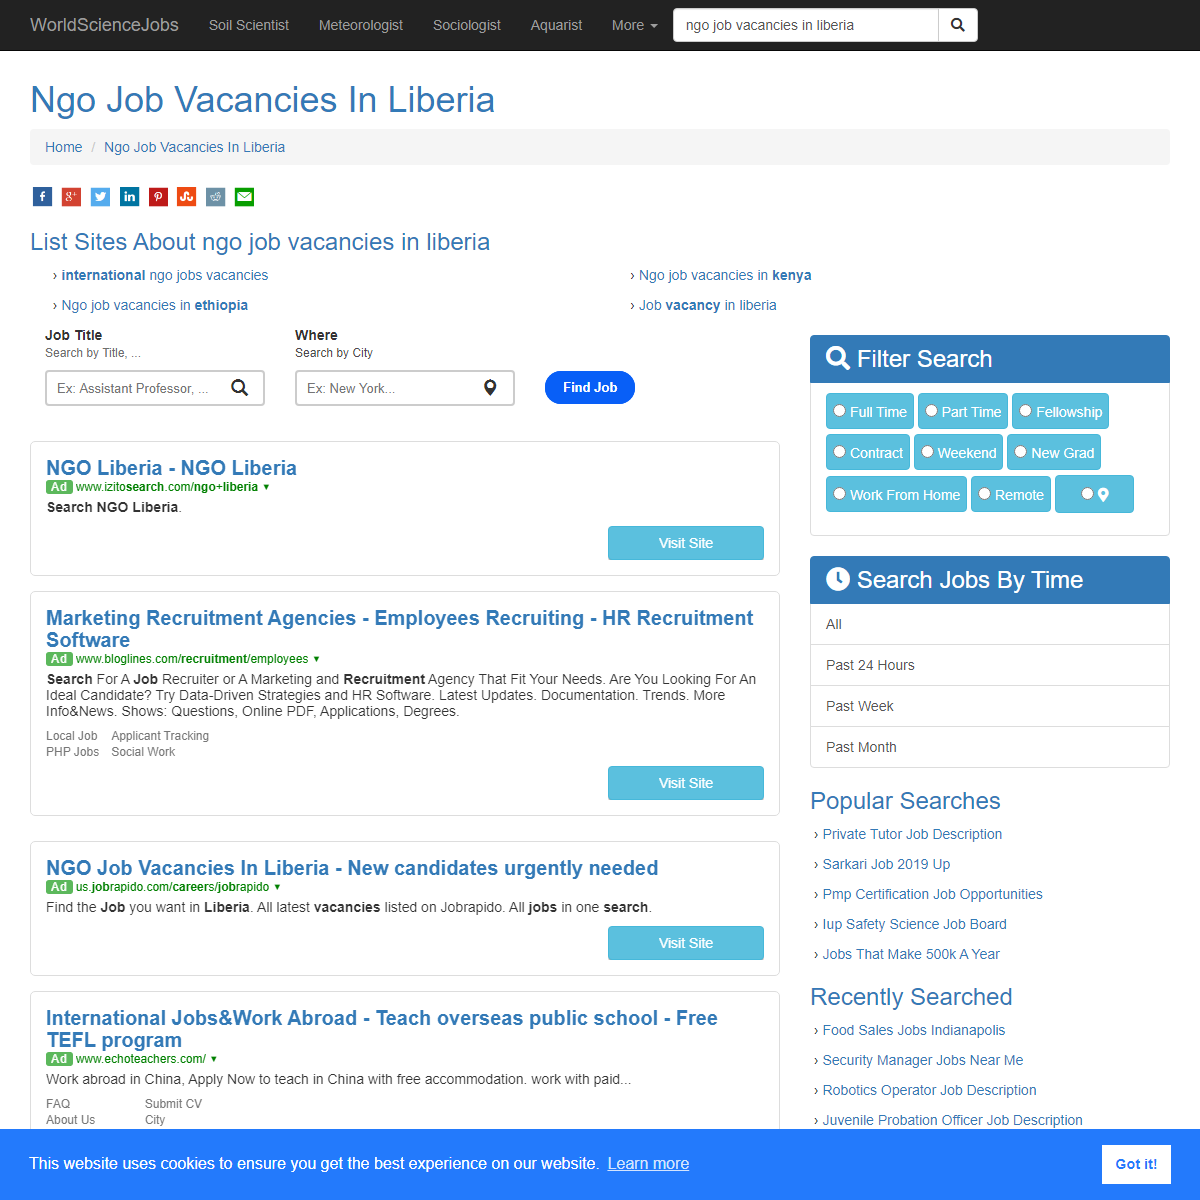 A complete backup of https://worldsciencejobs.com/ngo-job-vacancies-in-liberia